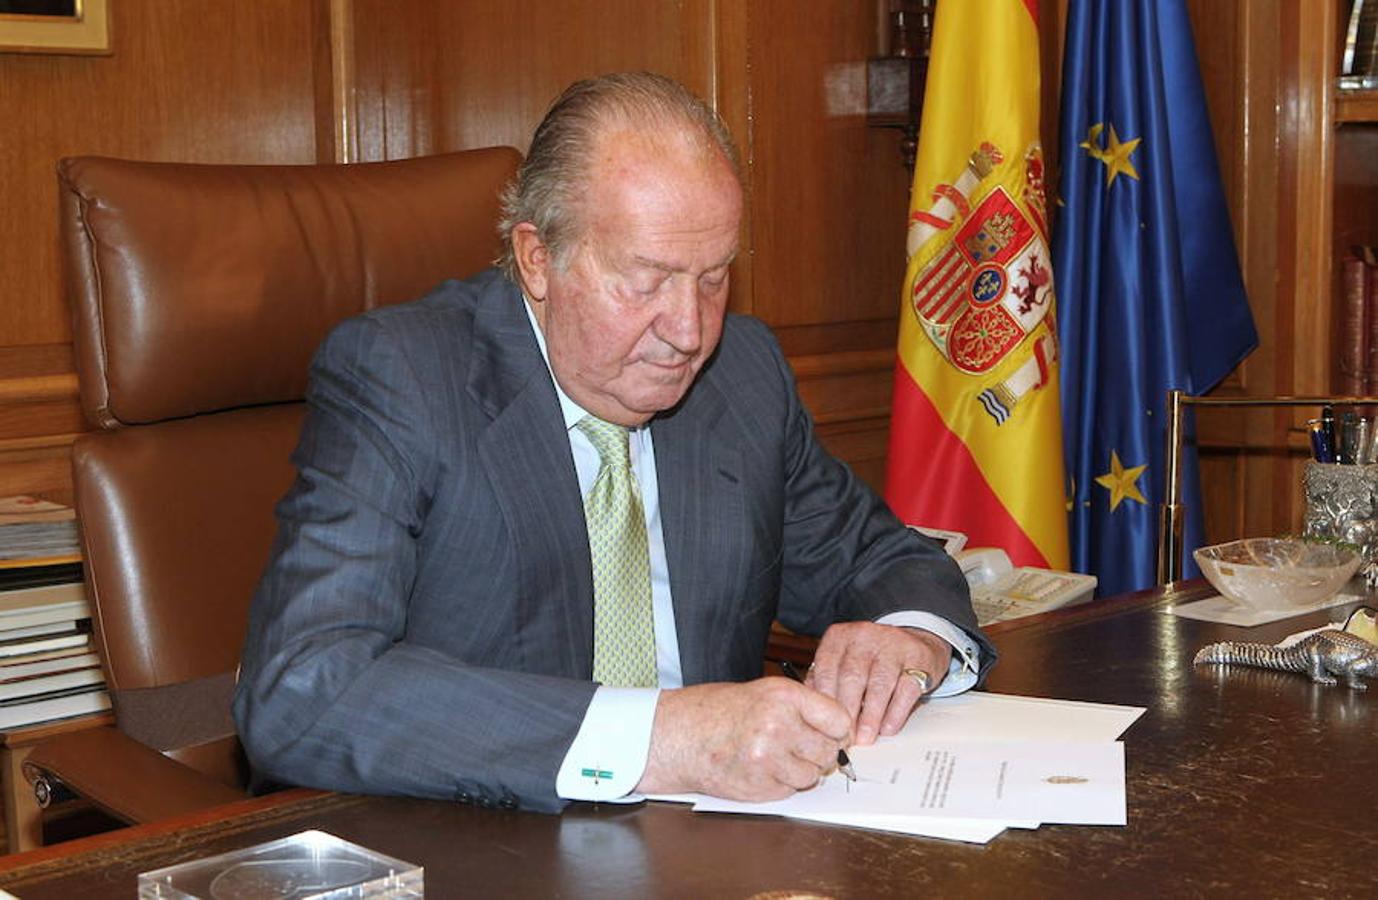 2 de junio de 2014. El presidente del gobierno, Mariano Rajoy, anuncia que el rey Juan Carlos abdica en favor de su hijo, que asumirá el trono como Felipe VI. Momento en el que el Monarca firma el documento de su abdicación.